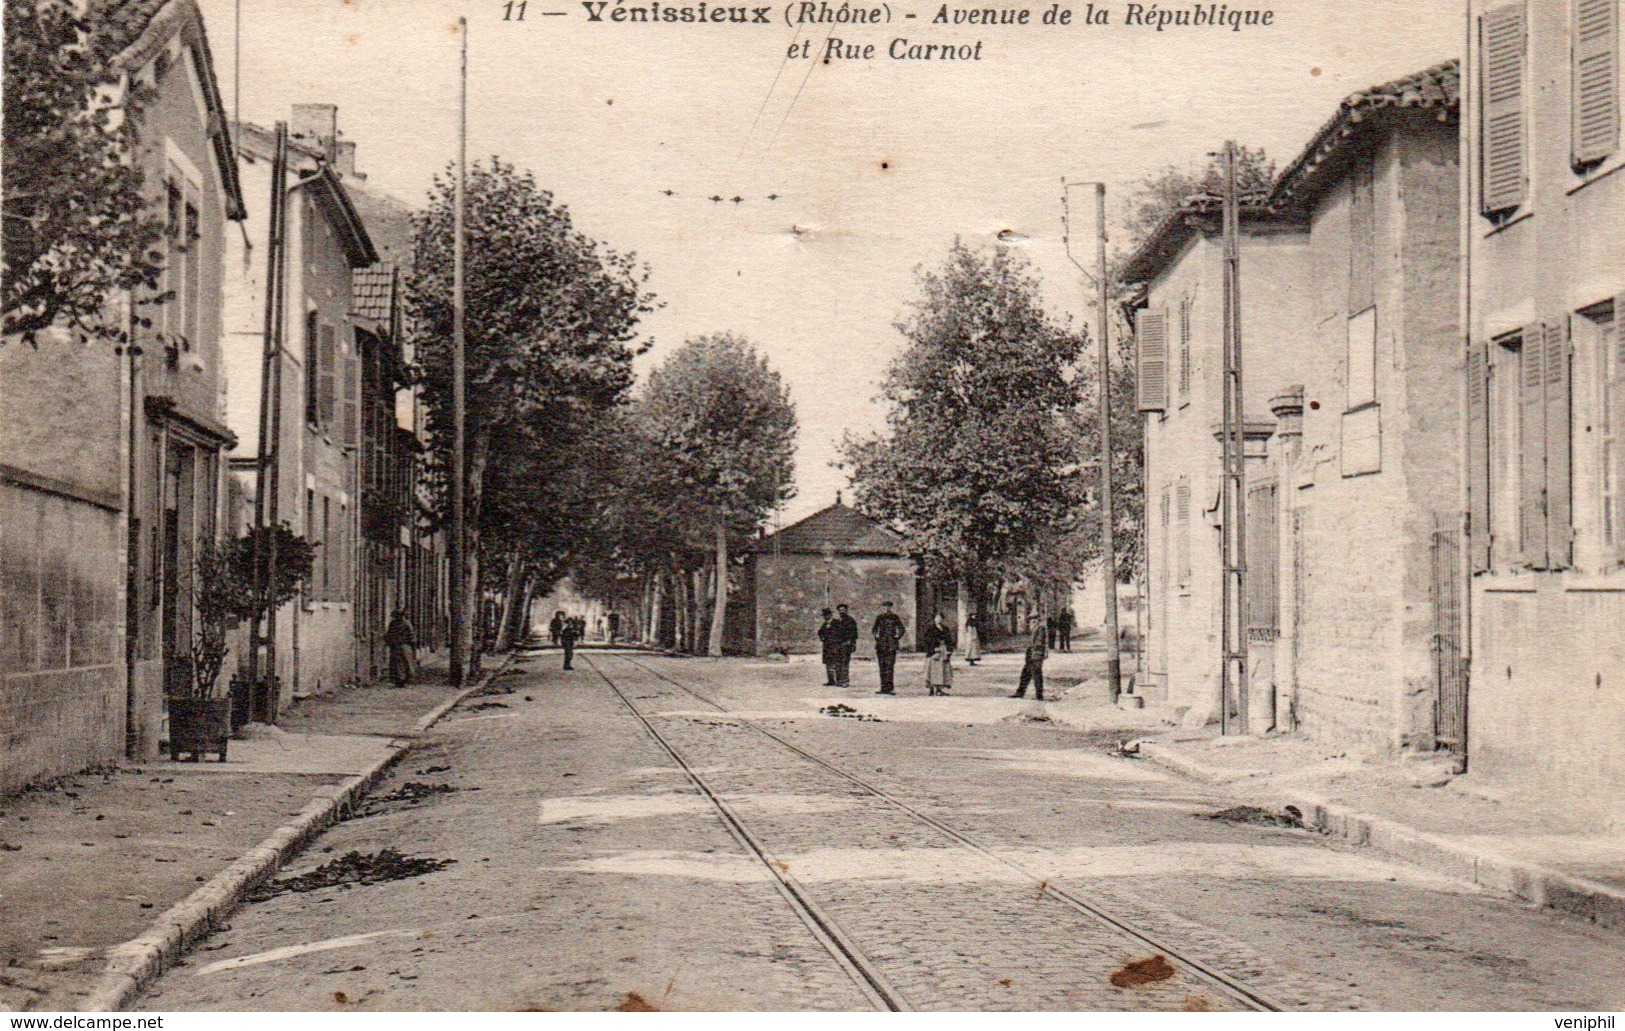 CARTE - VENISSIEUX - RHONE - AVENUE DE LA REPUBLIQUE ET RUE CARNOT -1907 - Vénissieux